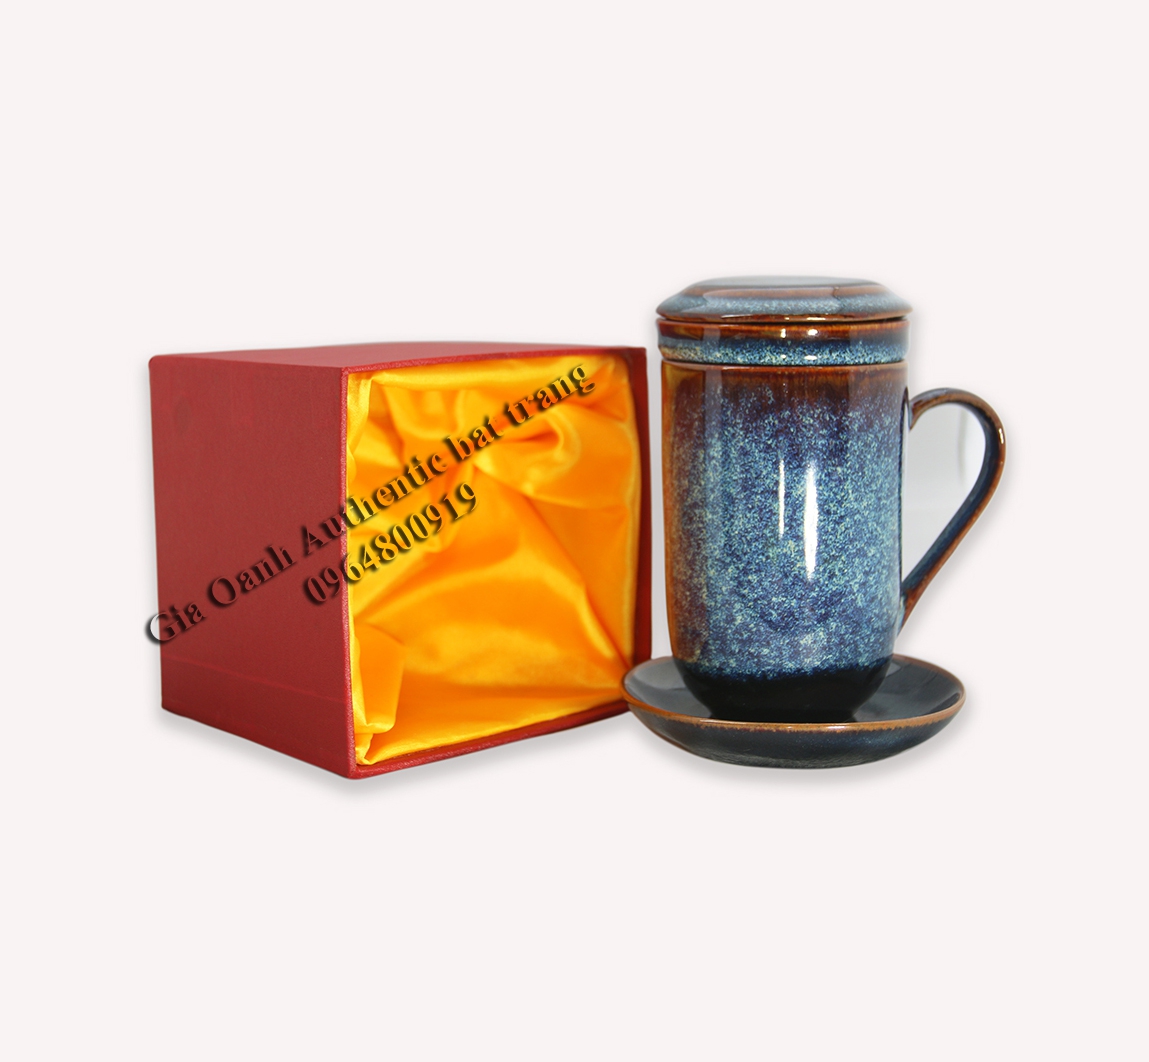 Tea filter cup gift - Bộ quà tặng cốc lọc trà men hỏa biến đẳng cấp - quà tặng tuyệt vời cho dịp năm mới, tân gia hay quà tặng gia đình - sản phẩm sản xuất tại xưởng gốm sứ gia oanh authentic bat trang